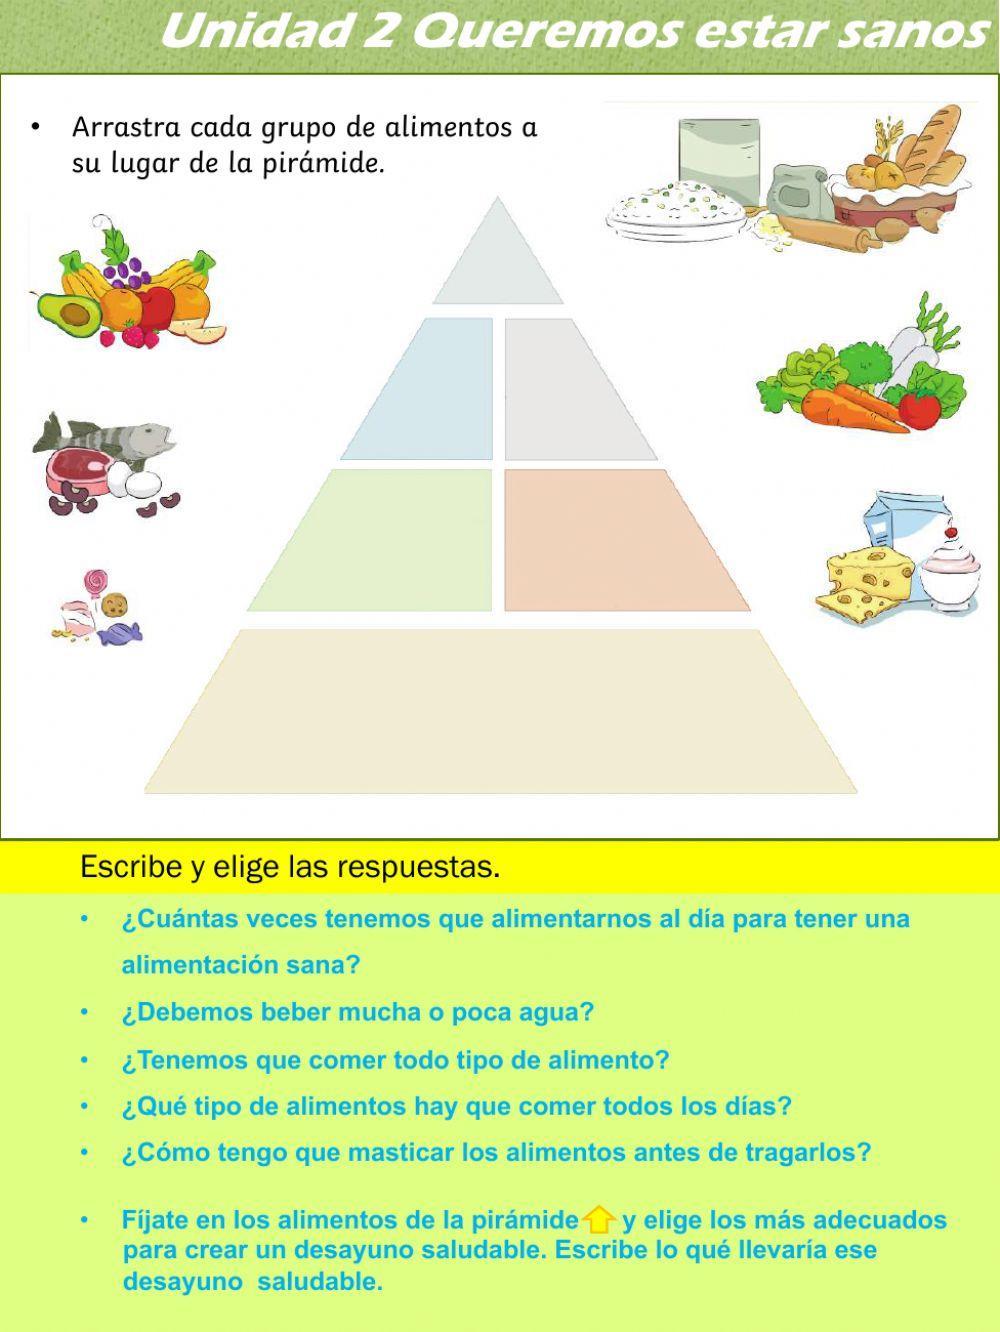 La pirámide de los alimentos